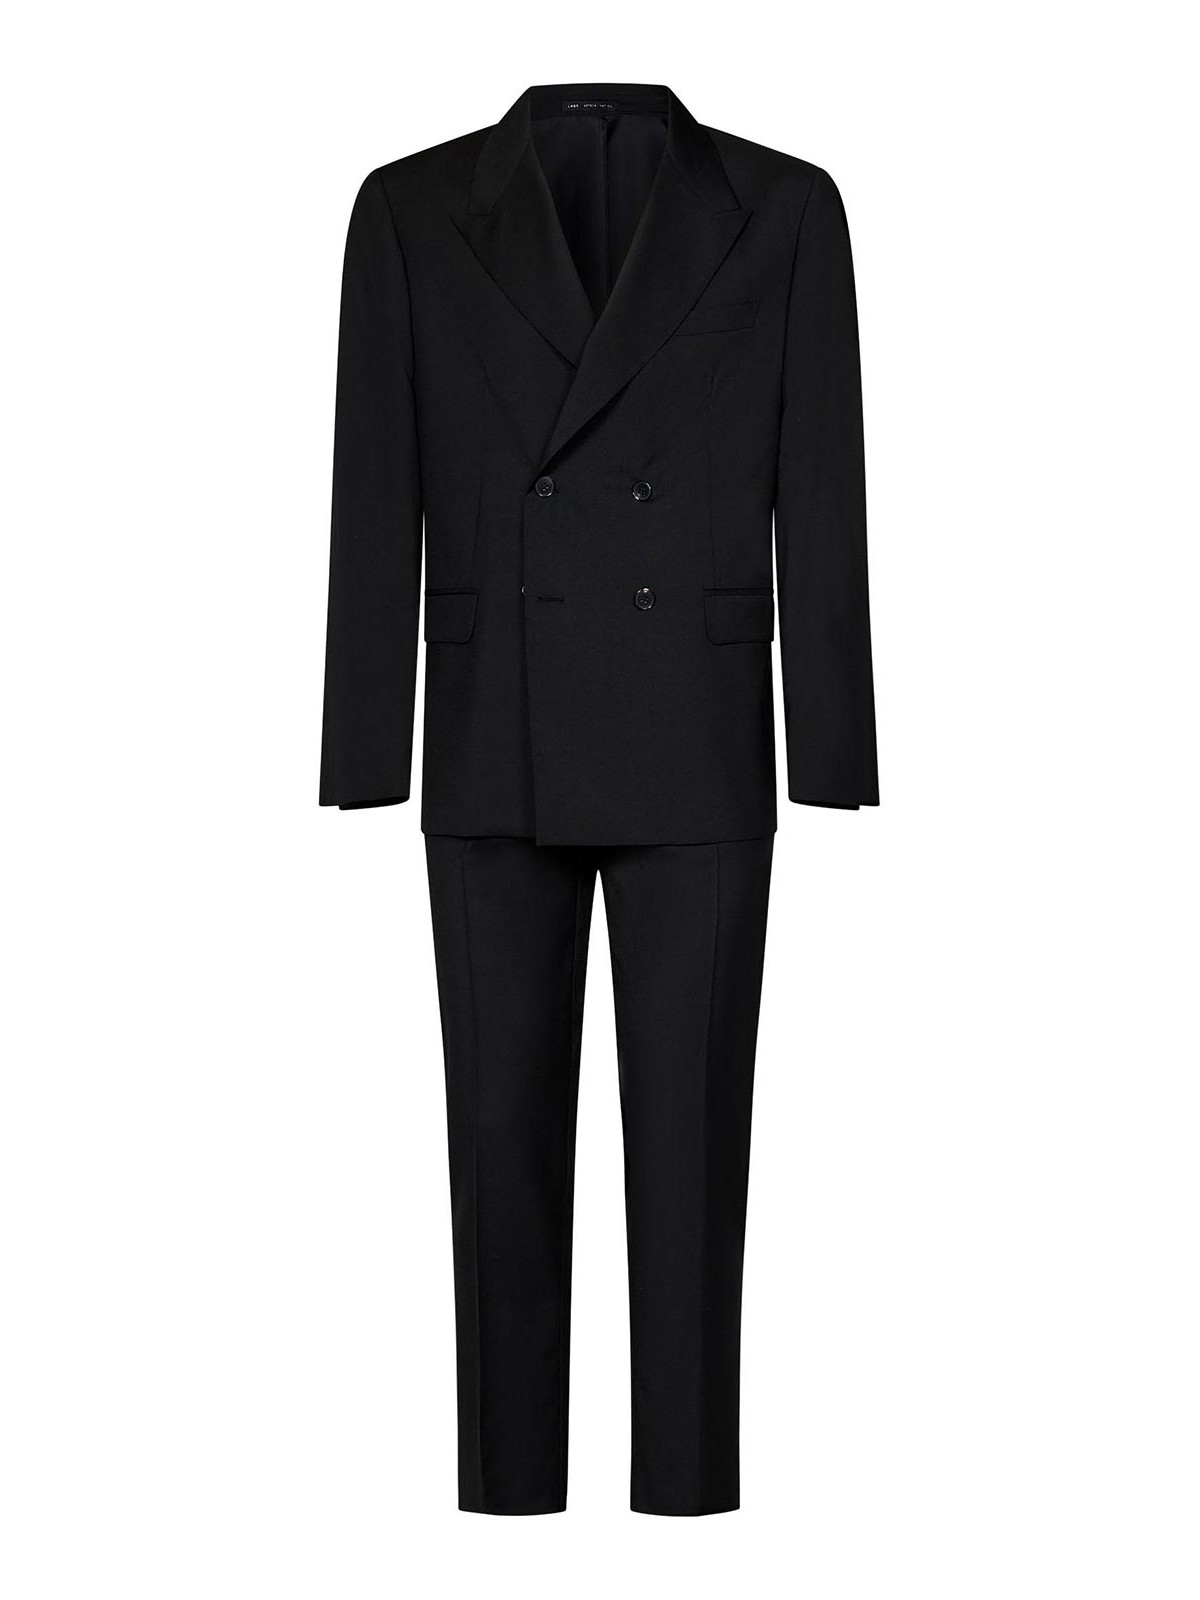 Low Brand Black Suit In Fresh Virgin Wool